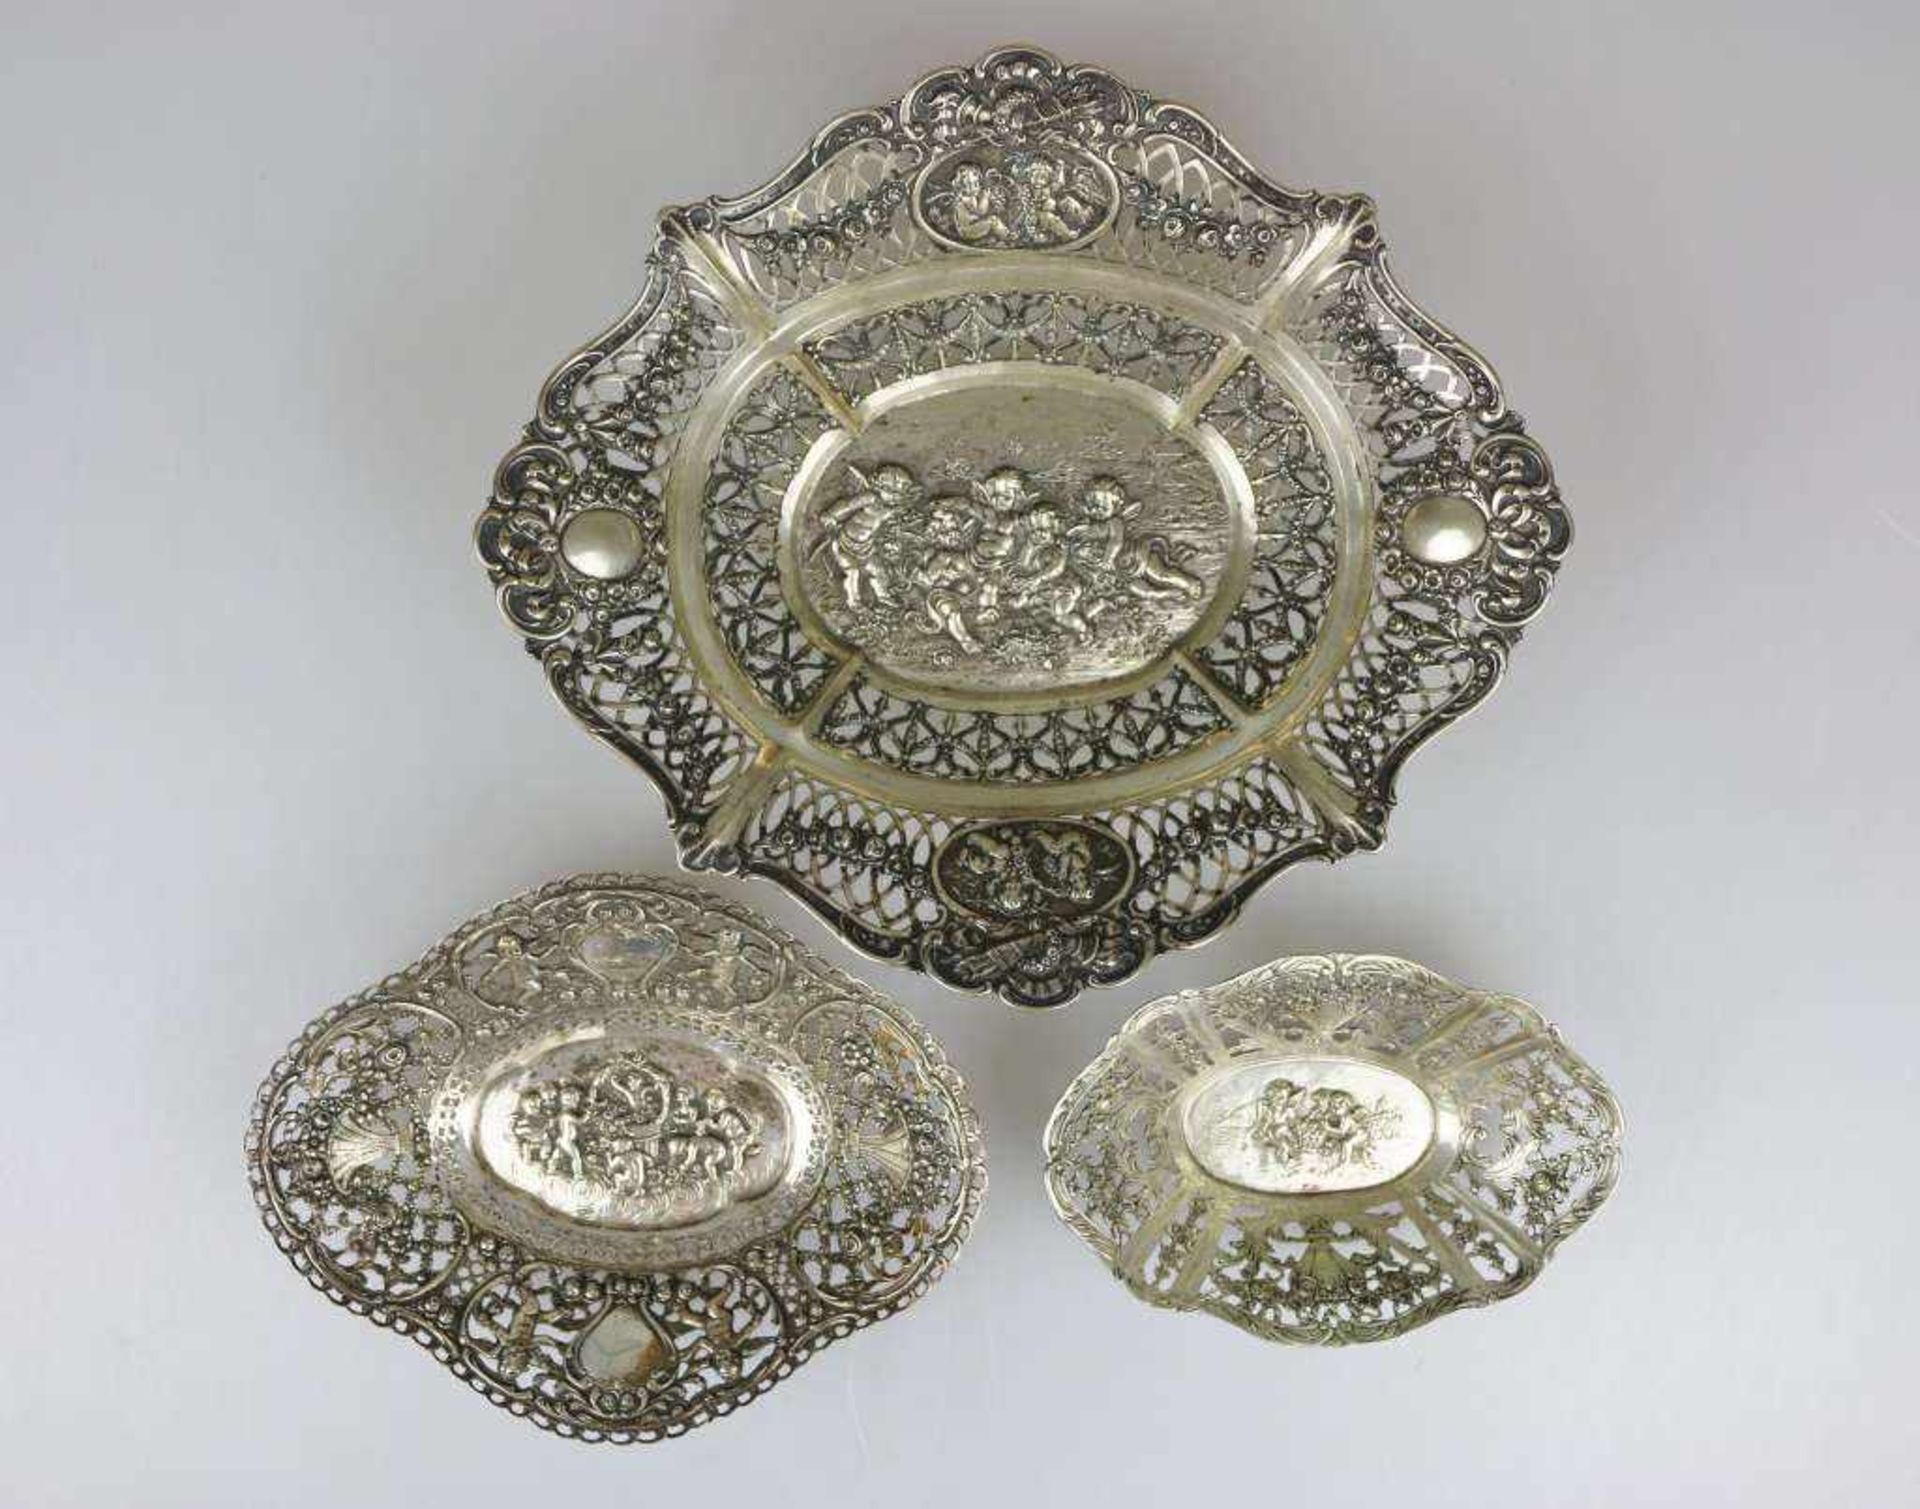 Konvolut Silber, 20. Jh., bestehend aus drei Schalen: durchbrochene Fahne mit überwiegend floralem